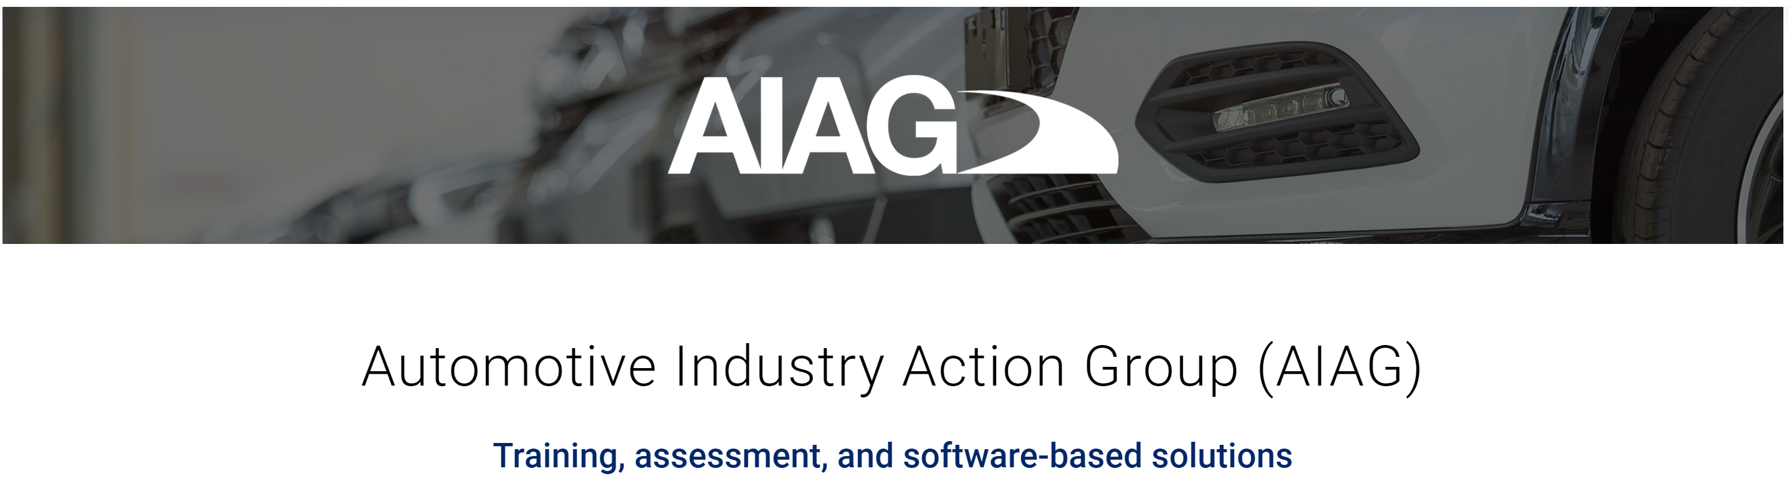 AIAG是一个非营利机构，旨在促进汽车行业参与者之间的合作，通过制定全球标准和协调业务实践来优化行业流程。为此，20多年来，AIAG与品仕国际合作提供各种培训、评估和基于软件的解决方案。2018年，AIAG选择品仕国际来开发核心工具支持™（CTS）软件。